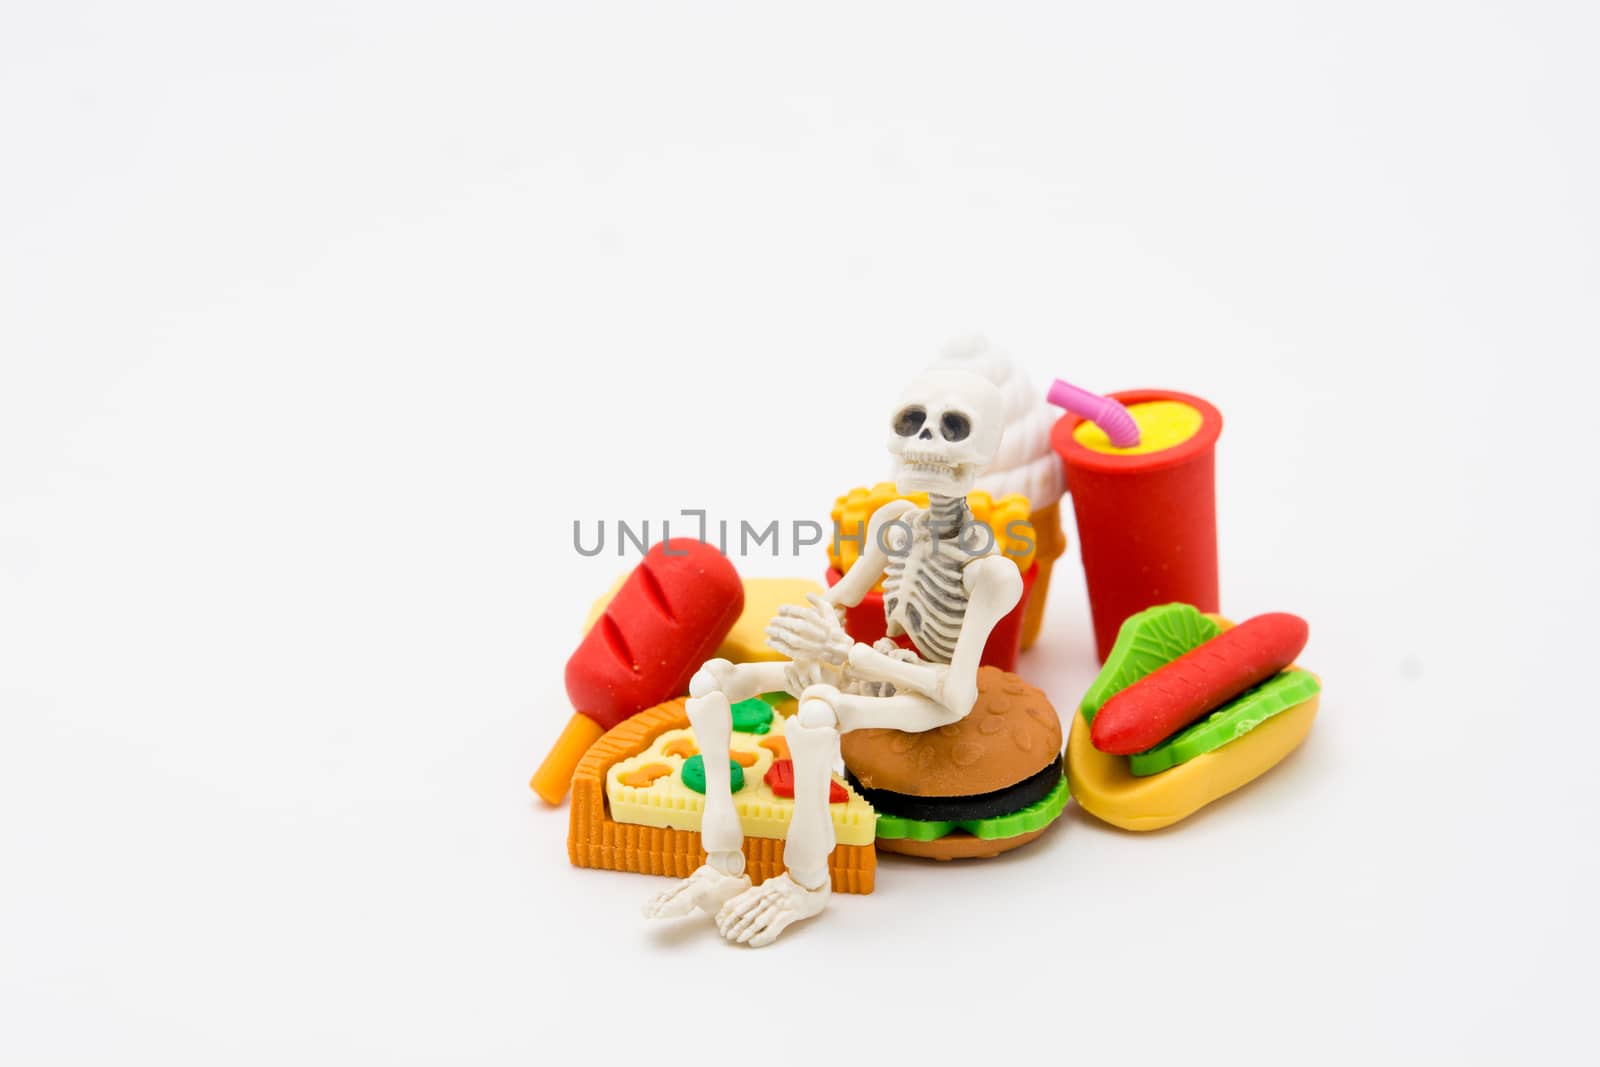 Skeleton and foods, enjoy eating until death with junk foods.